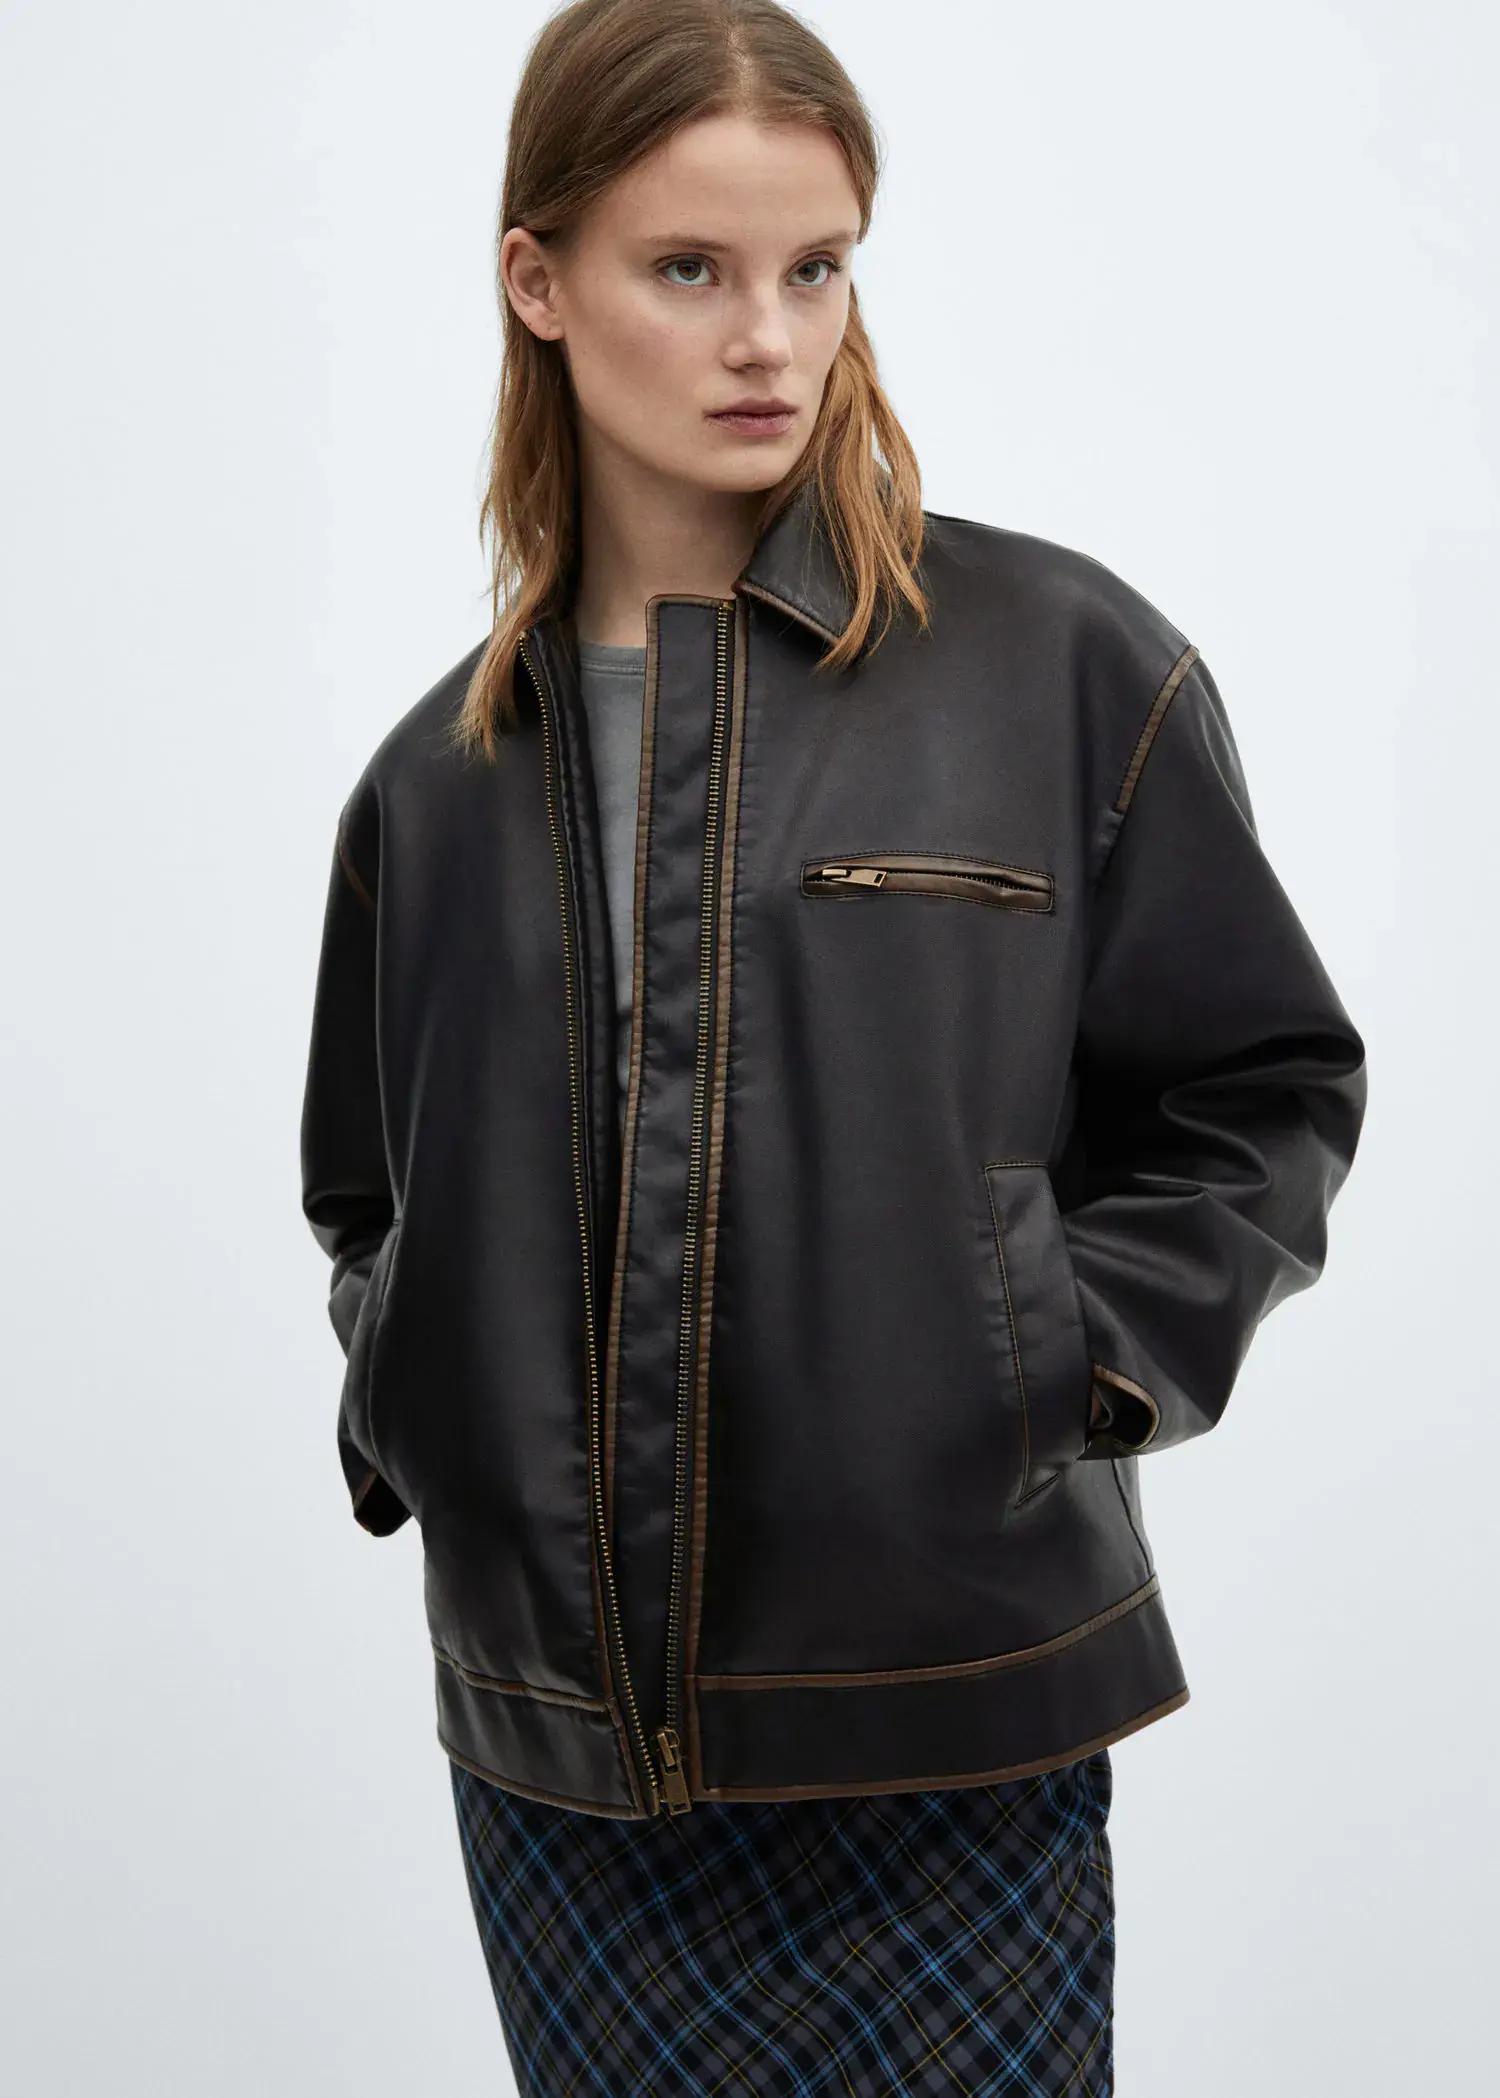 Mango Worn leather effect jacket. 2